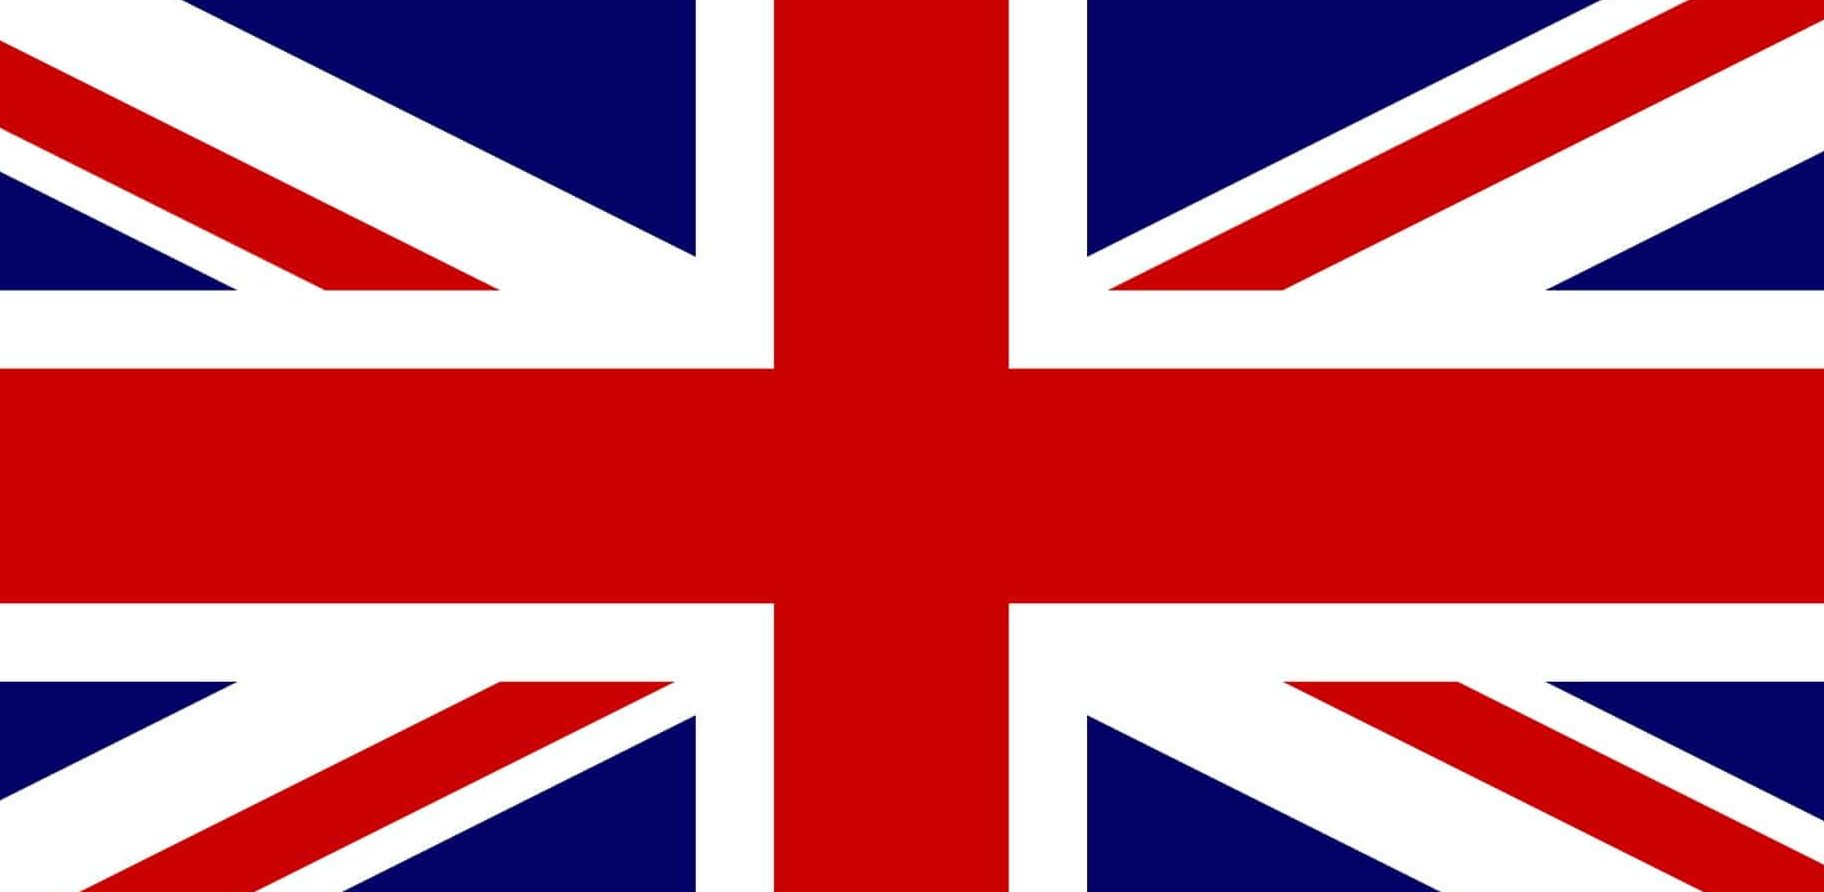 Bandiera britannica - Union Jack